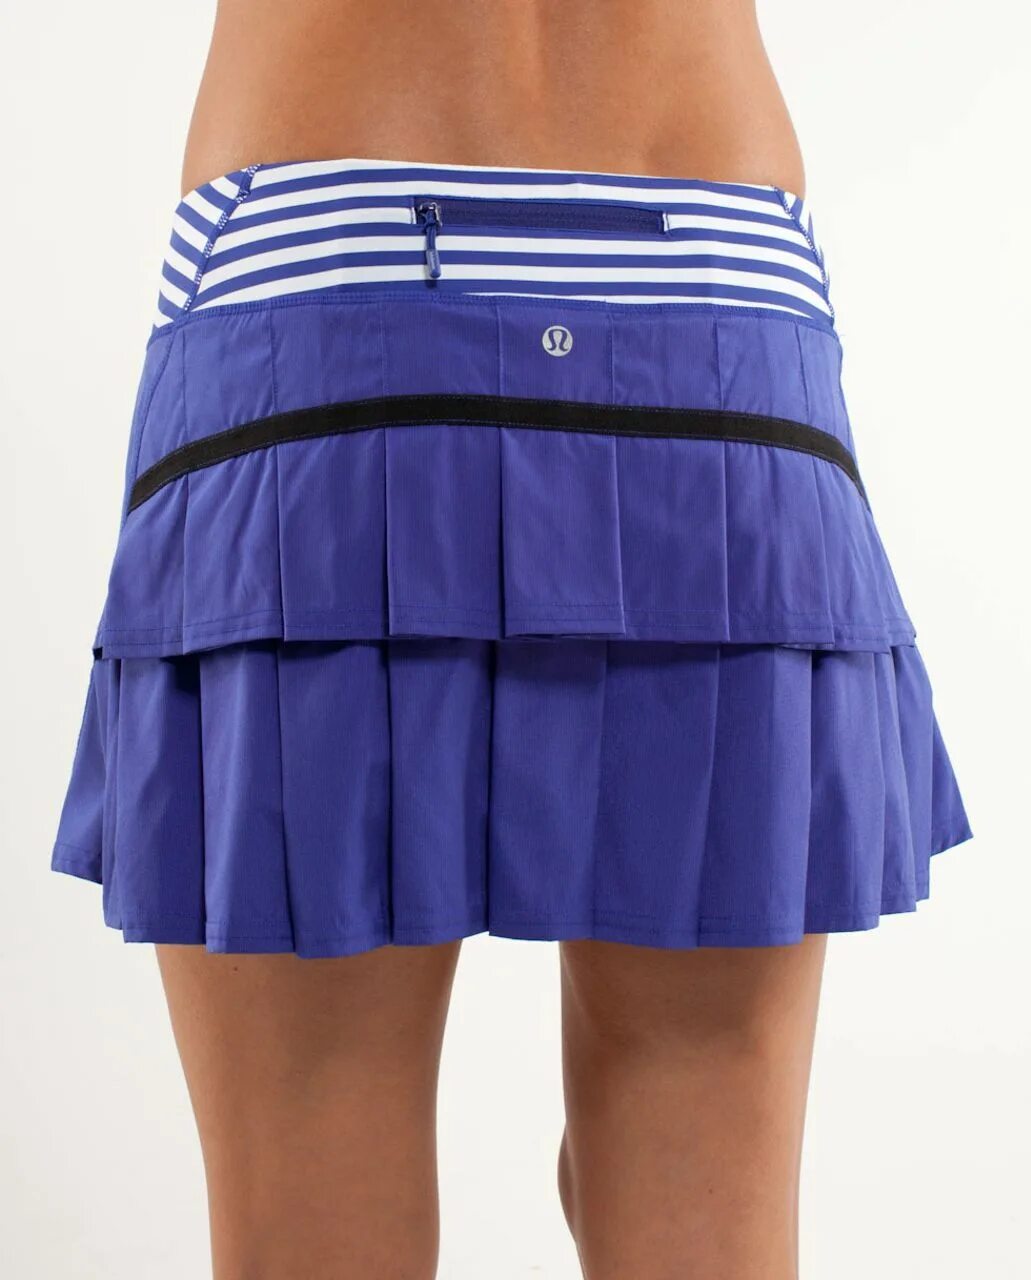 Теннисная юбка шорты. Теннисная юбка синяя. Юбка-шорты. Складки на шортах. Теннисная юбка с шортами в складку.